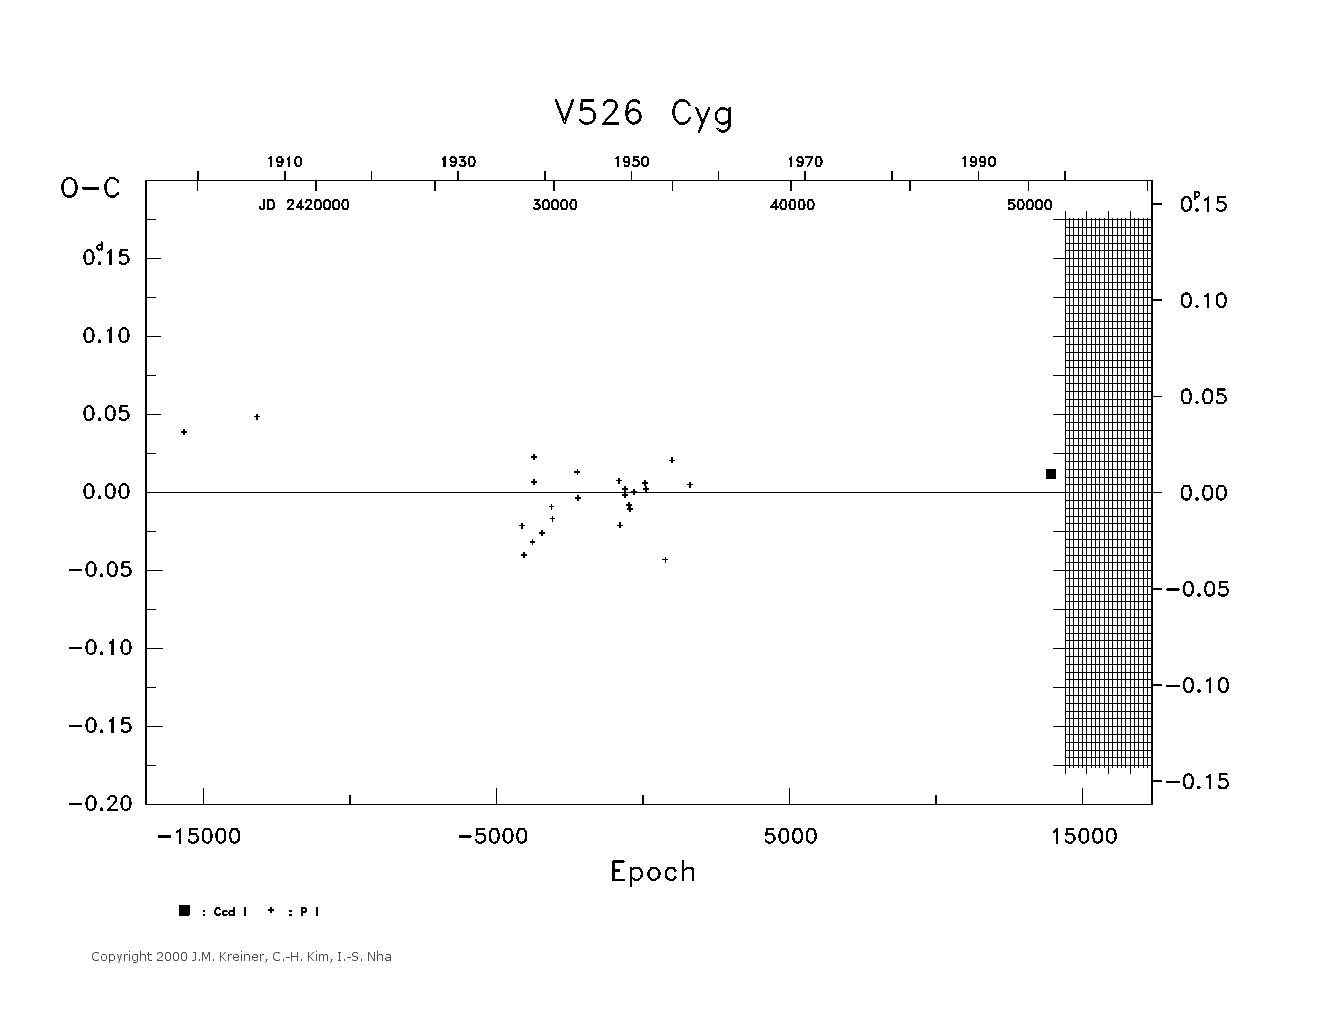 [IMAGE: large V526 CYG O-C diagram]